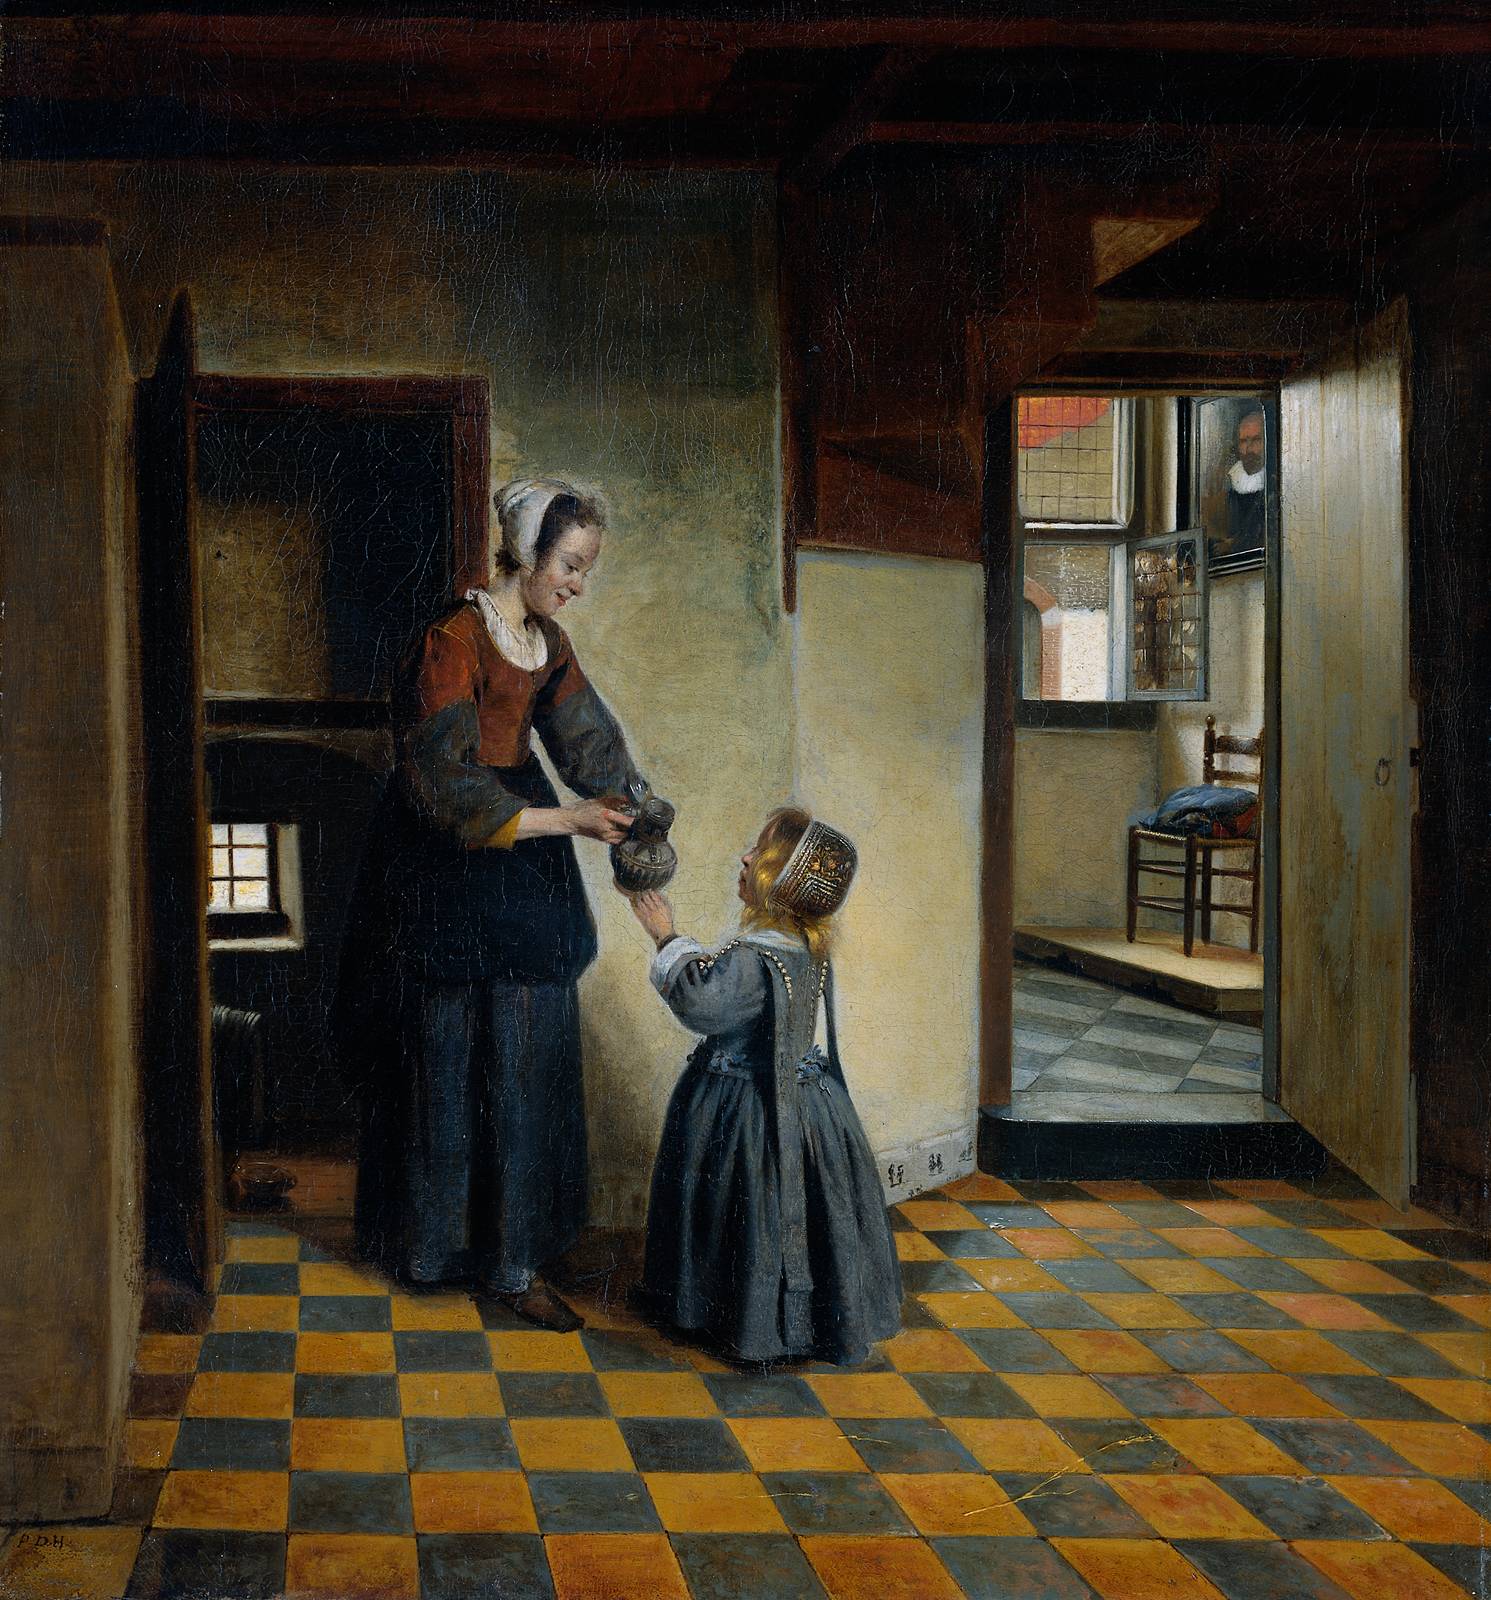 Pieter de Hooch - A Baroque Era painter